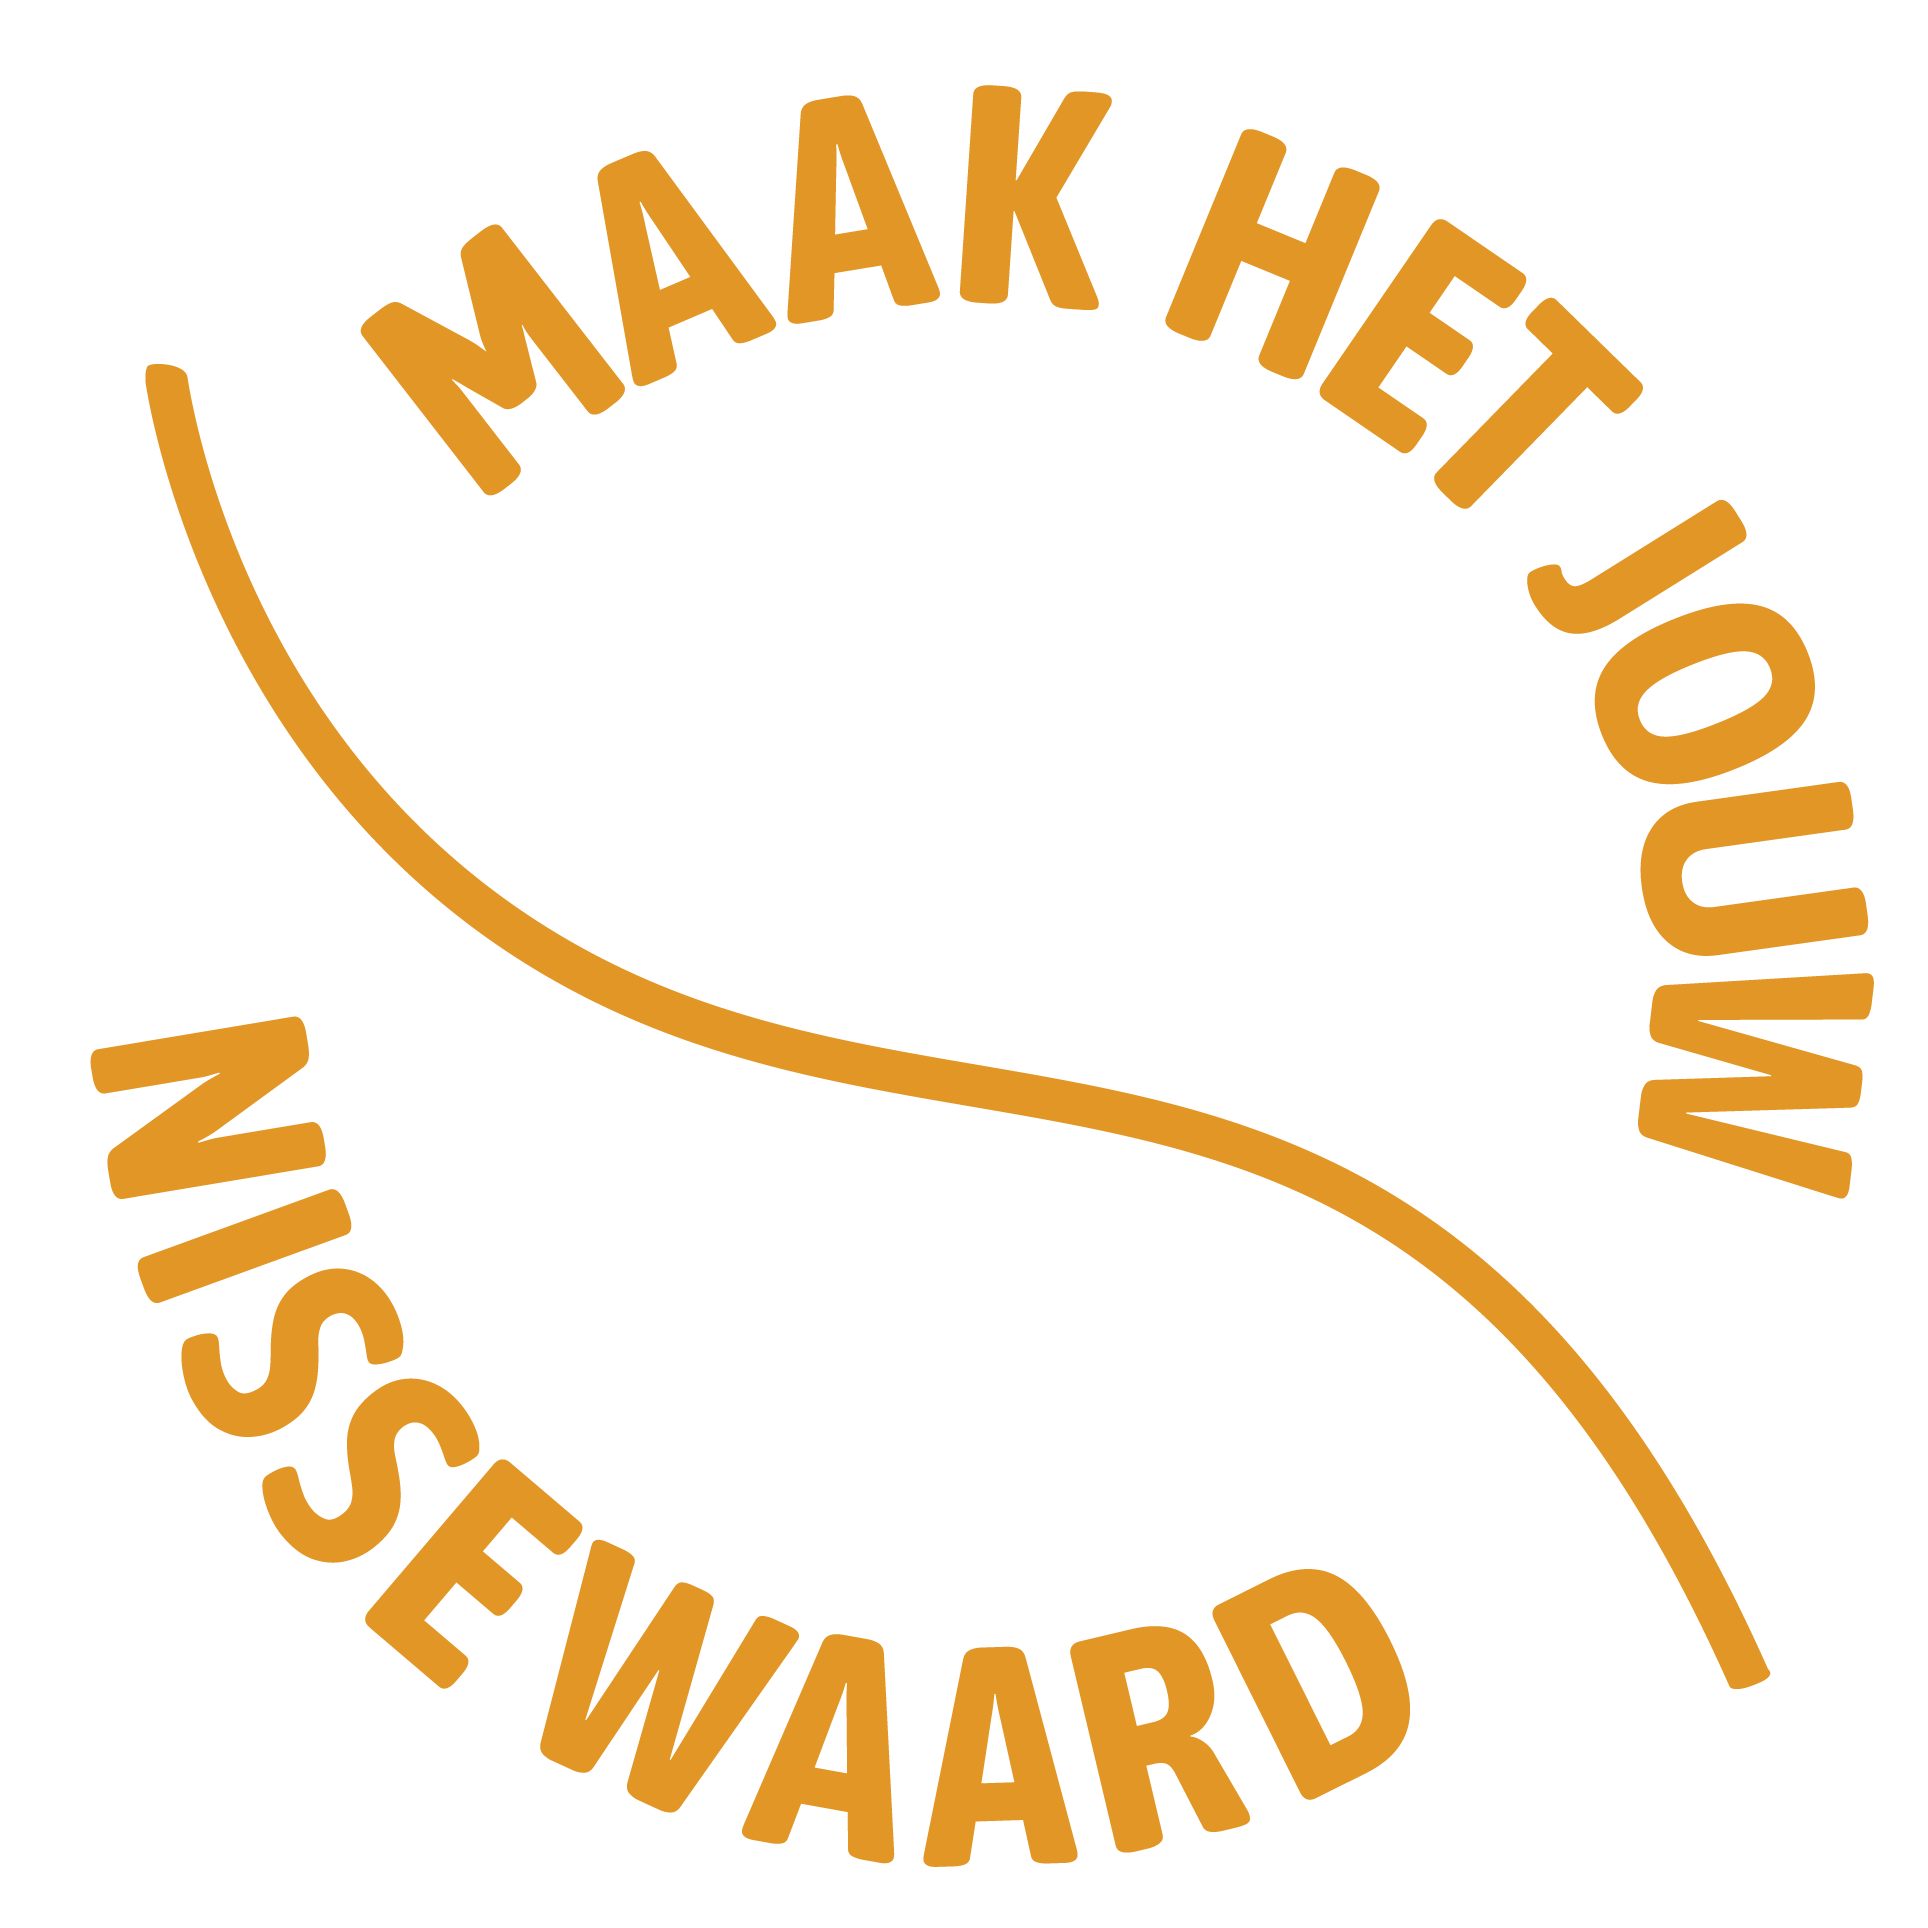 Toekomst Nissewaard logo